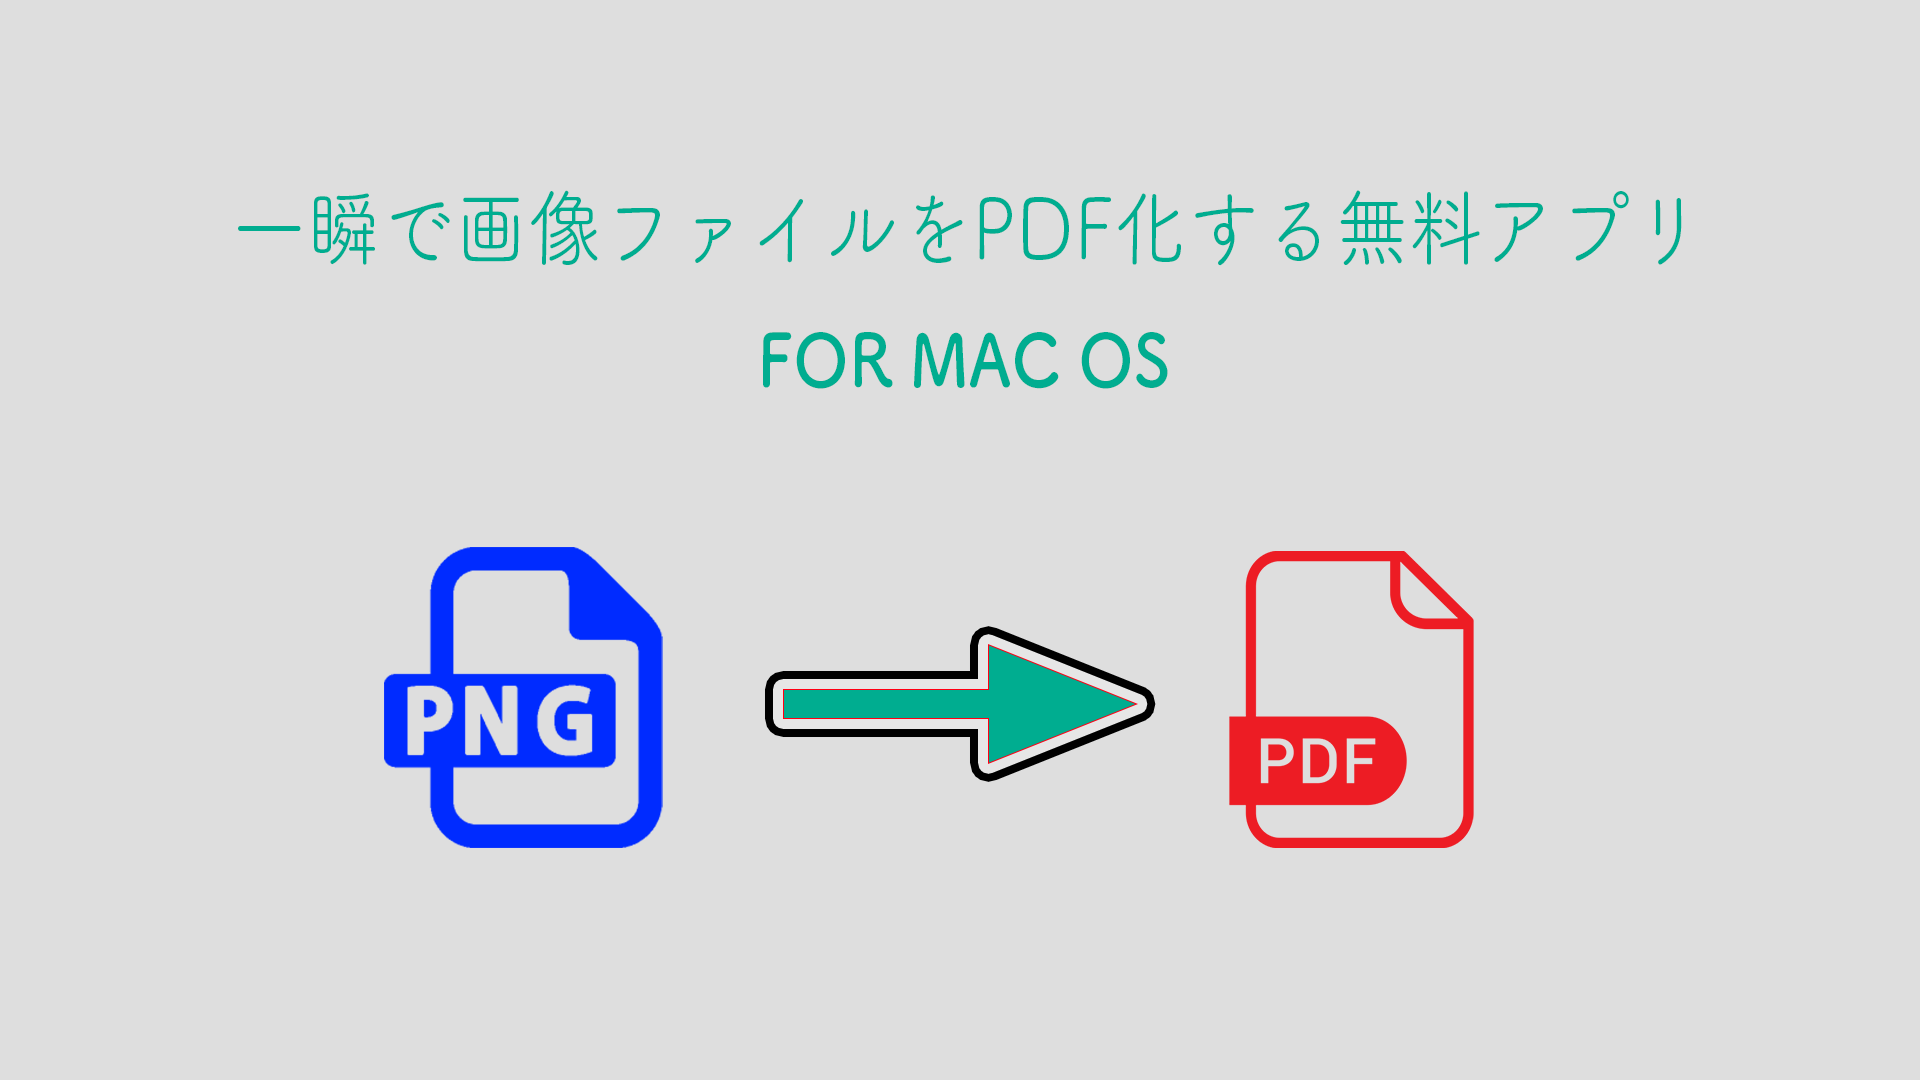 pdfmac - 【無料】一瞬で画像ファイルをPDF化する無料アプリ【Mac】